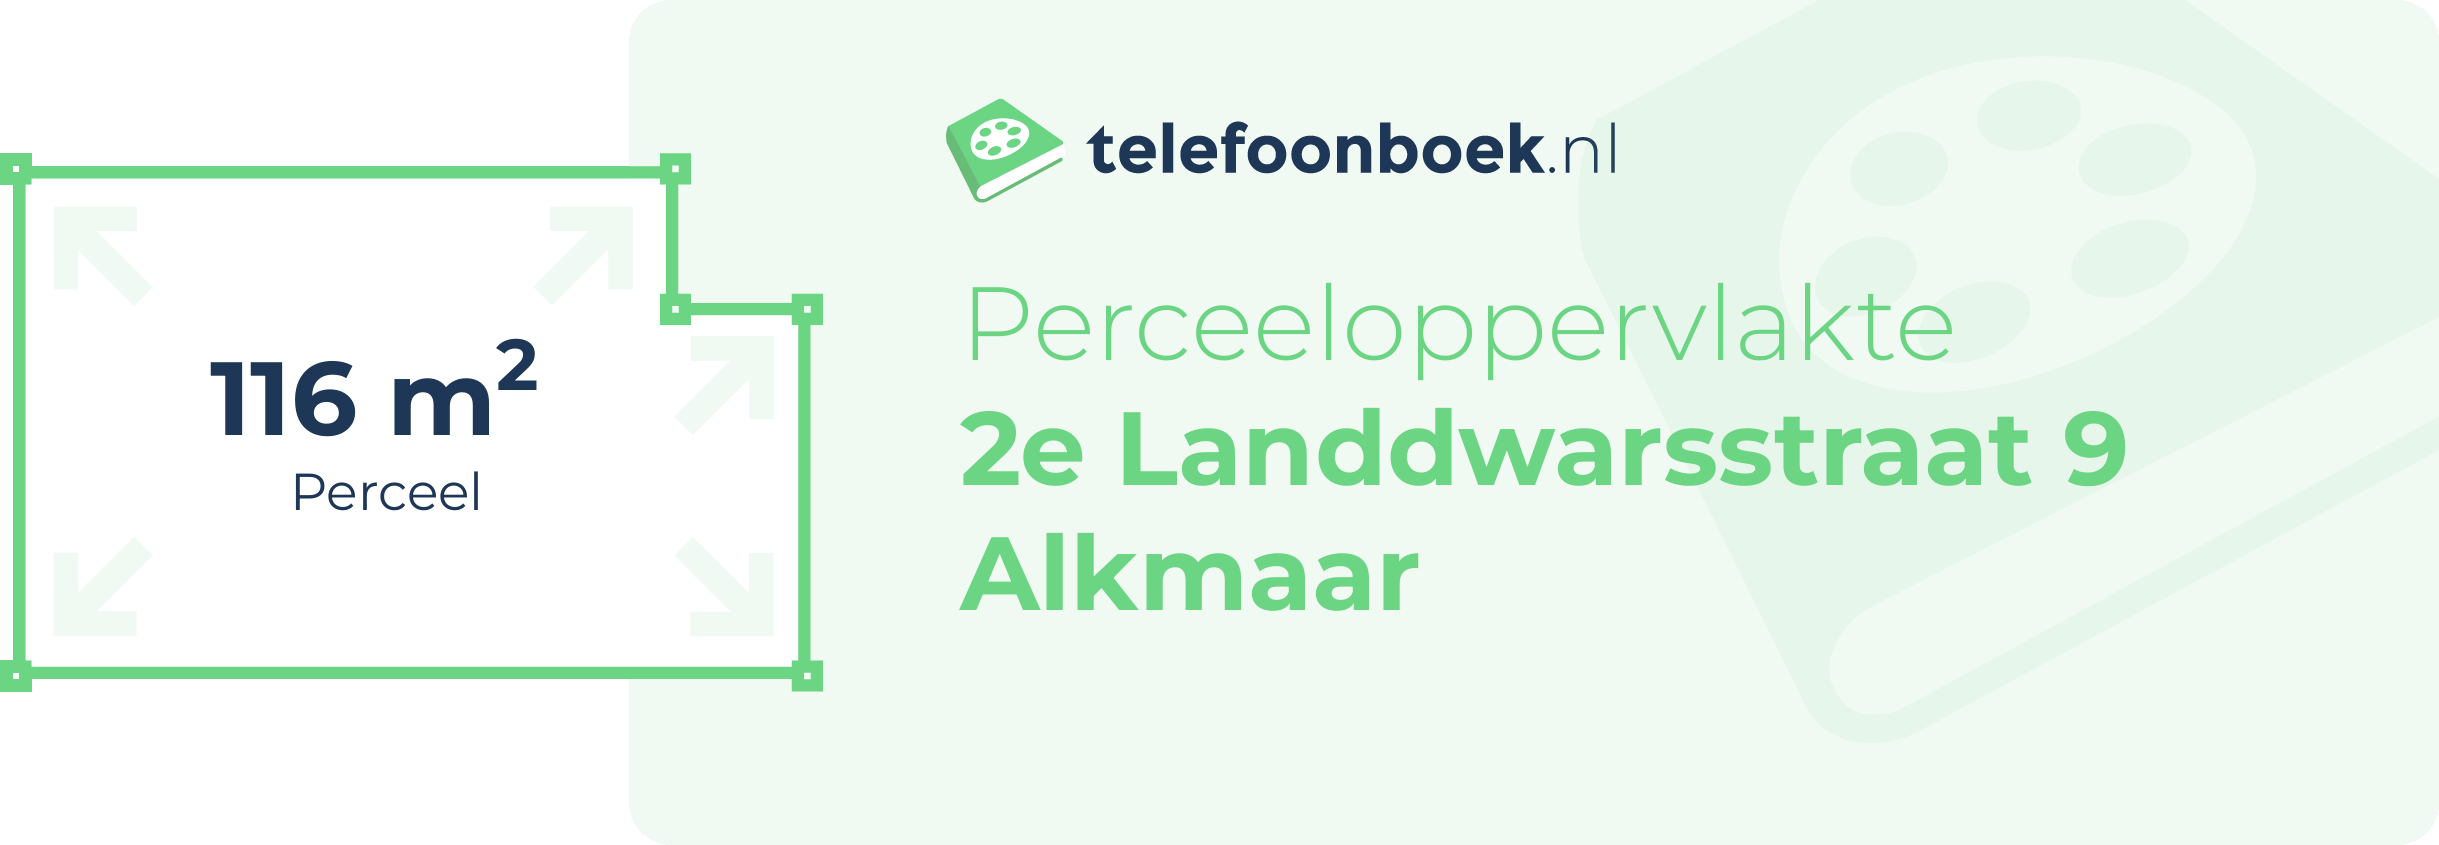 Perceeloppervlakte 2e Landdwarsstraat 9 Alkmaar